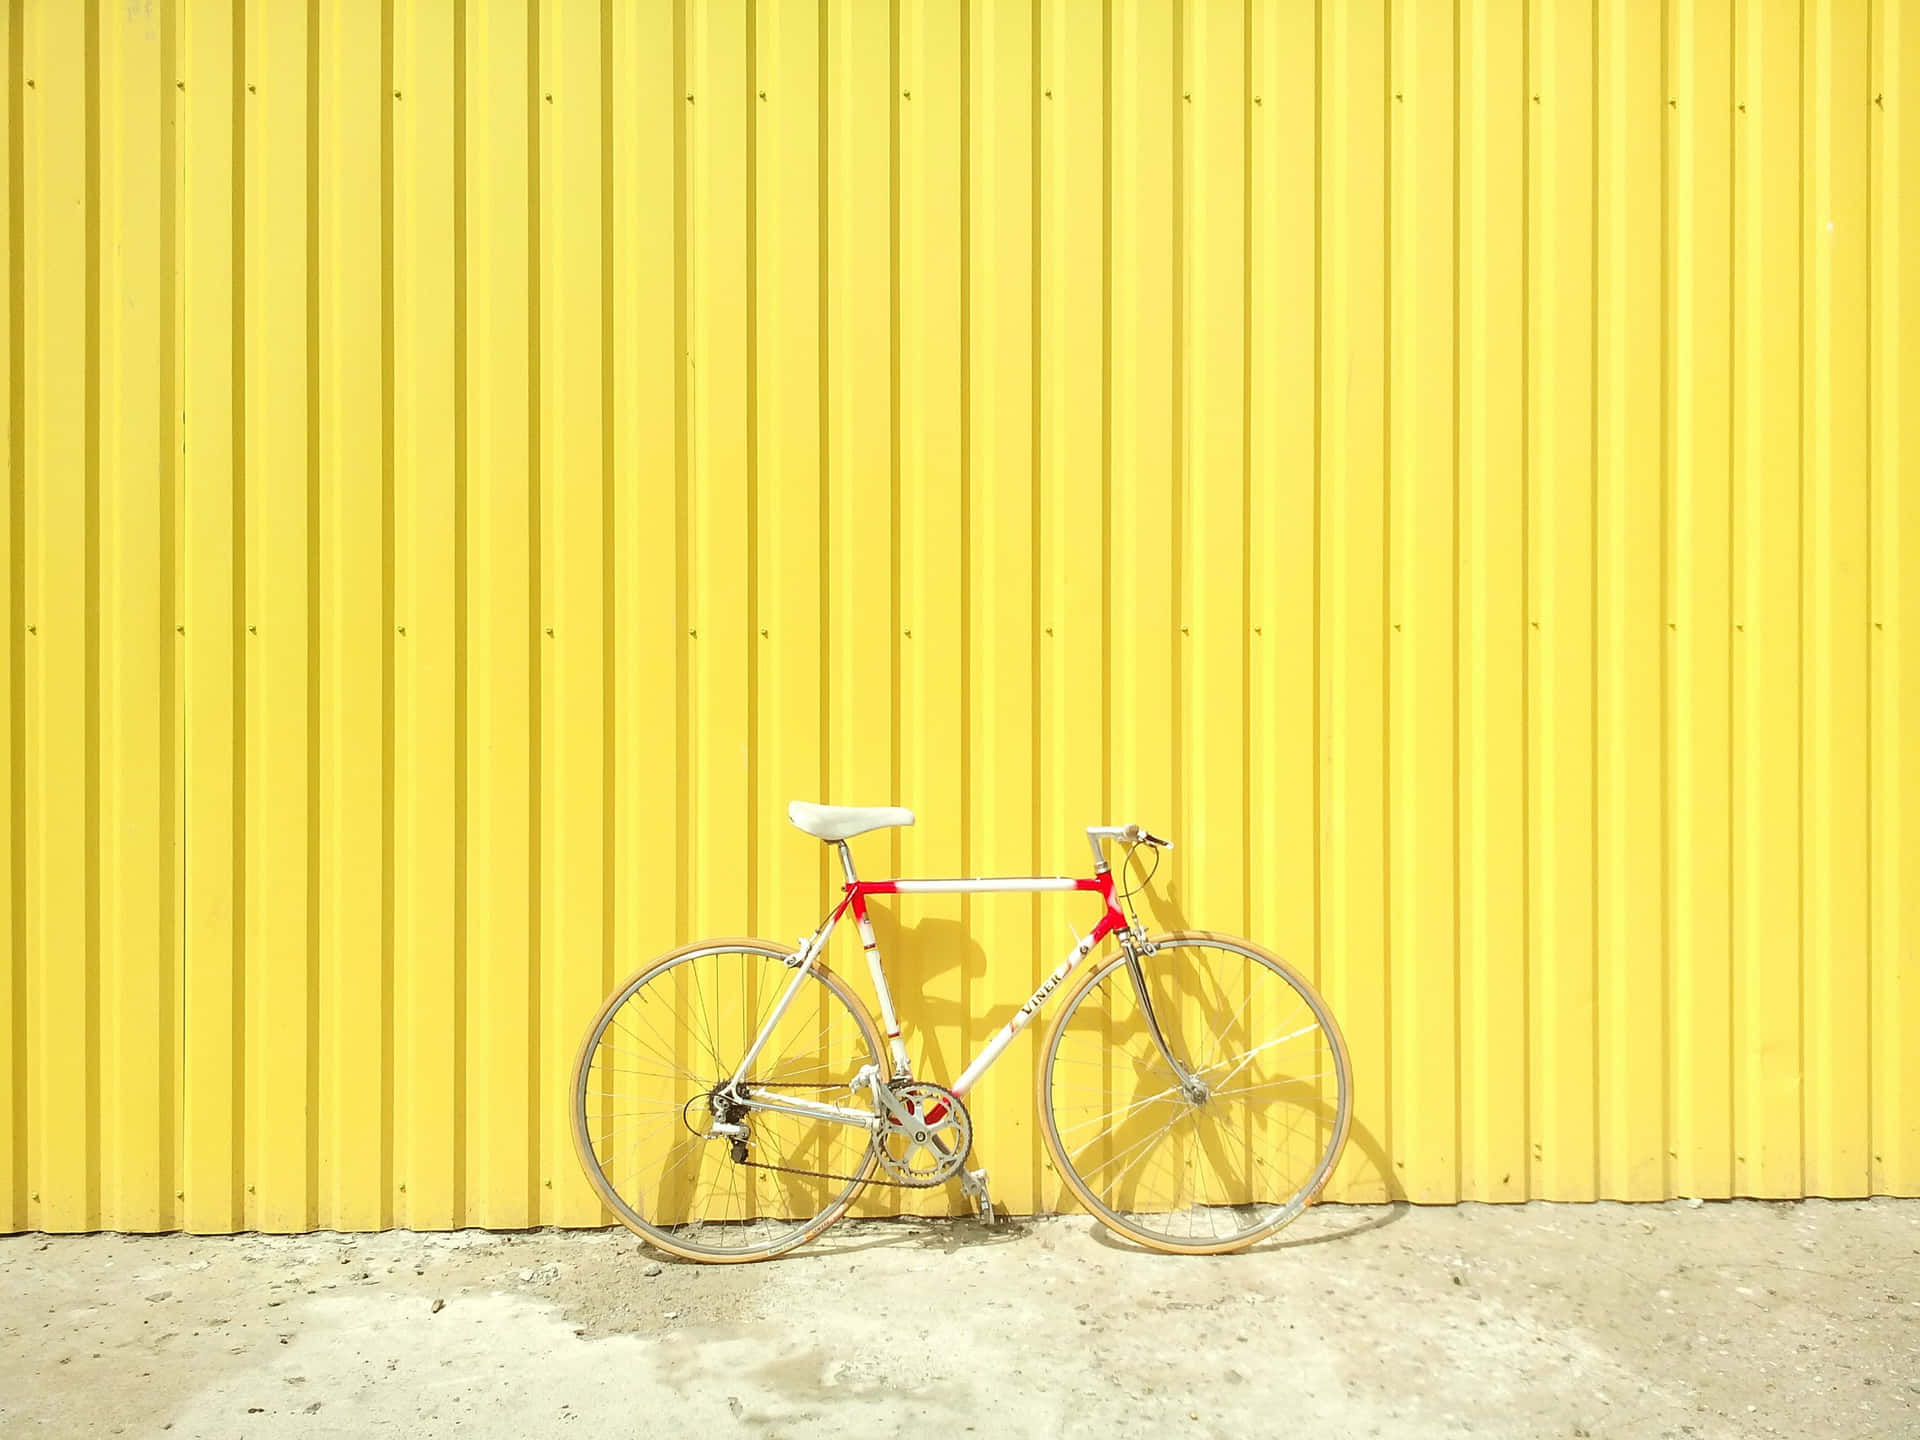 Bicicletaem Fundo De Cor Amarelo Metálico.